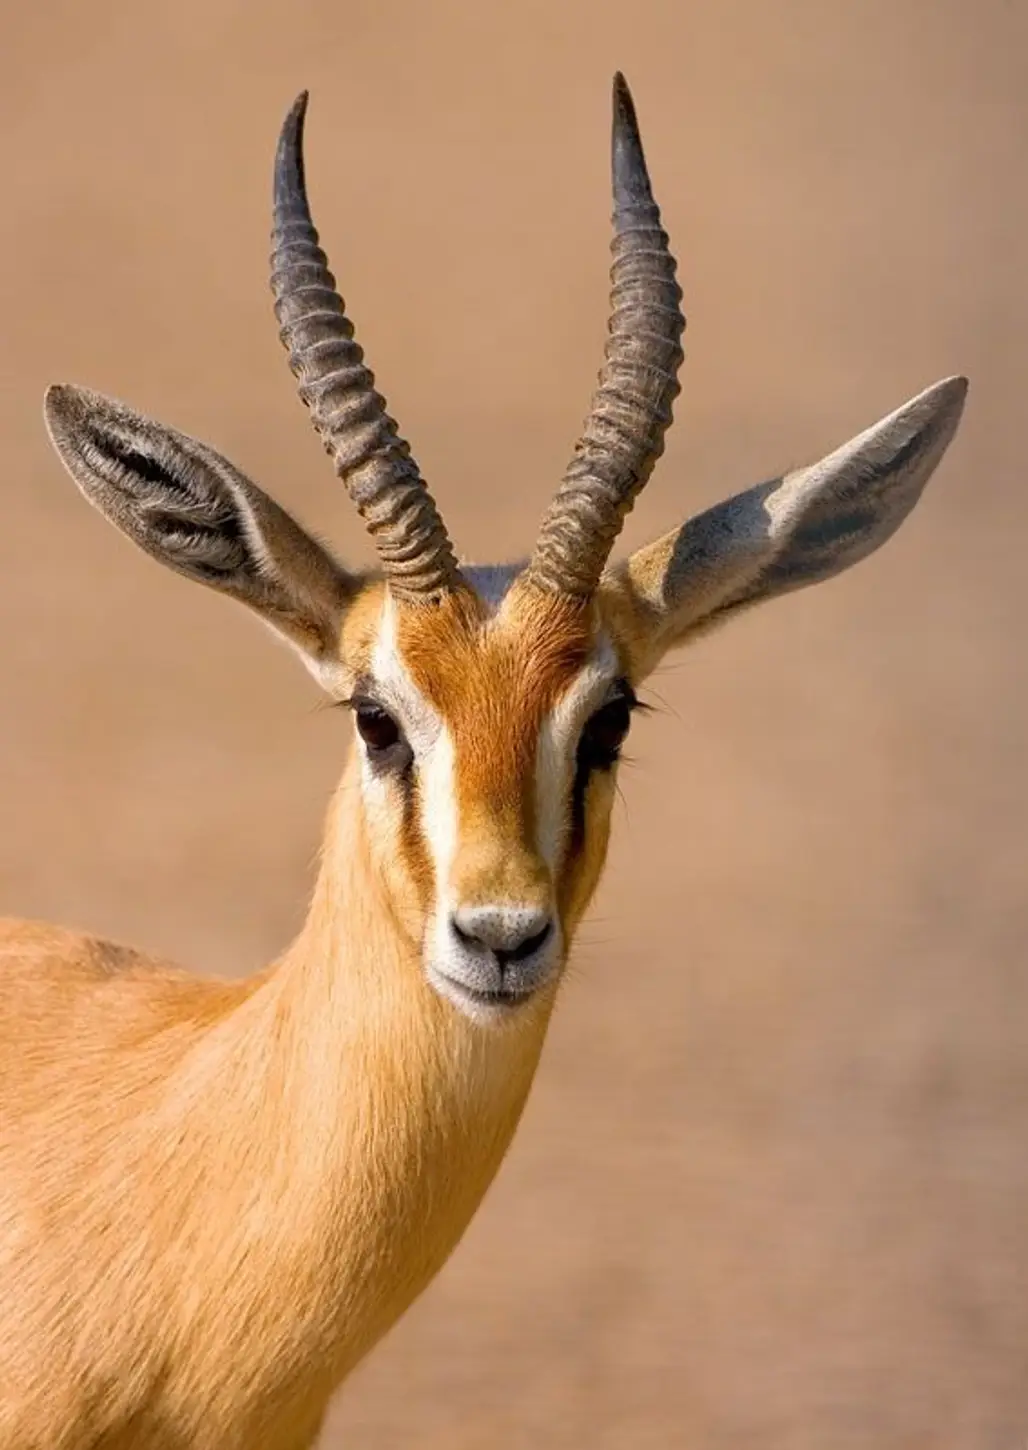 The Dorcas Gazelle